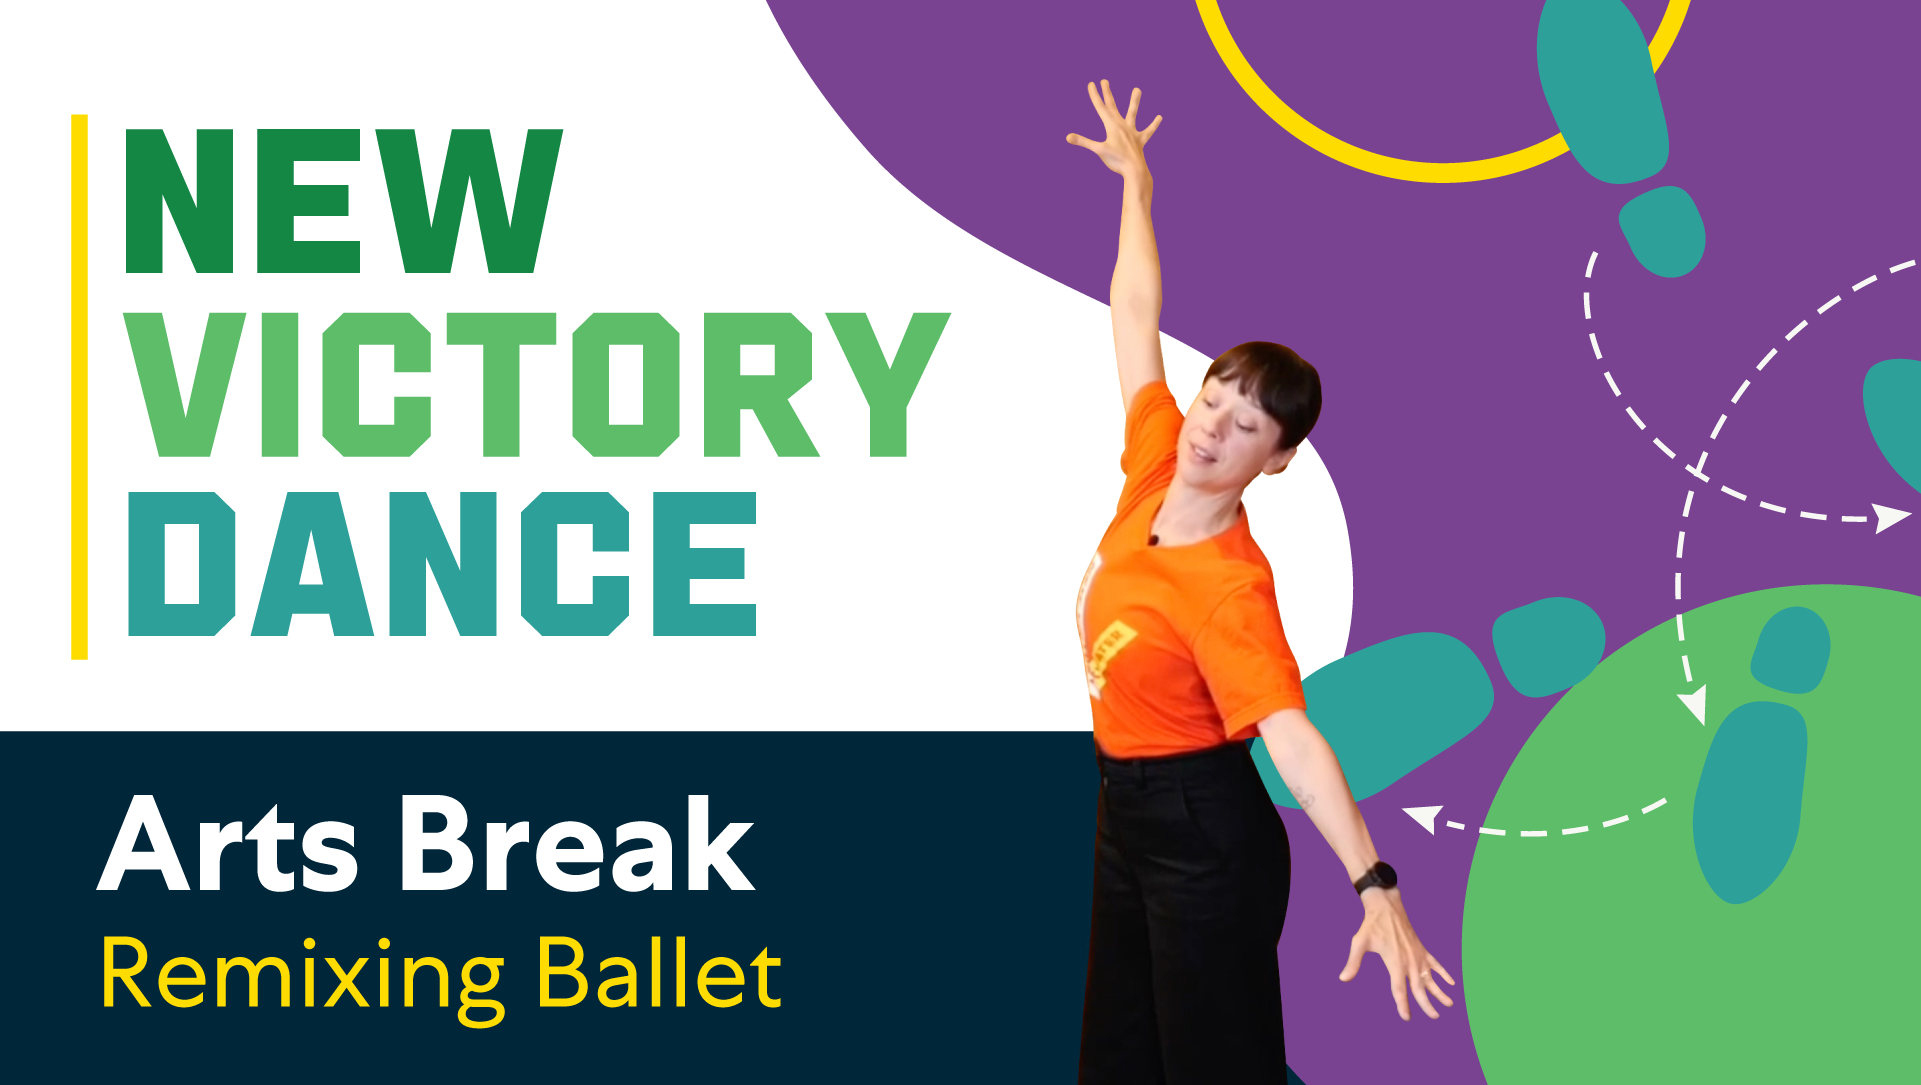 New Victory Dance Arts Break: Remixing Ballet